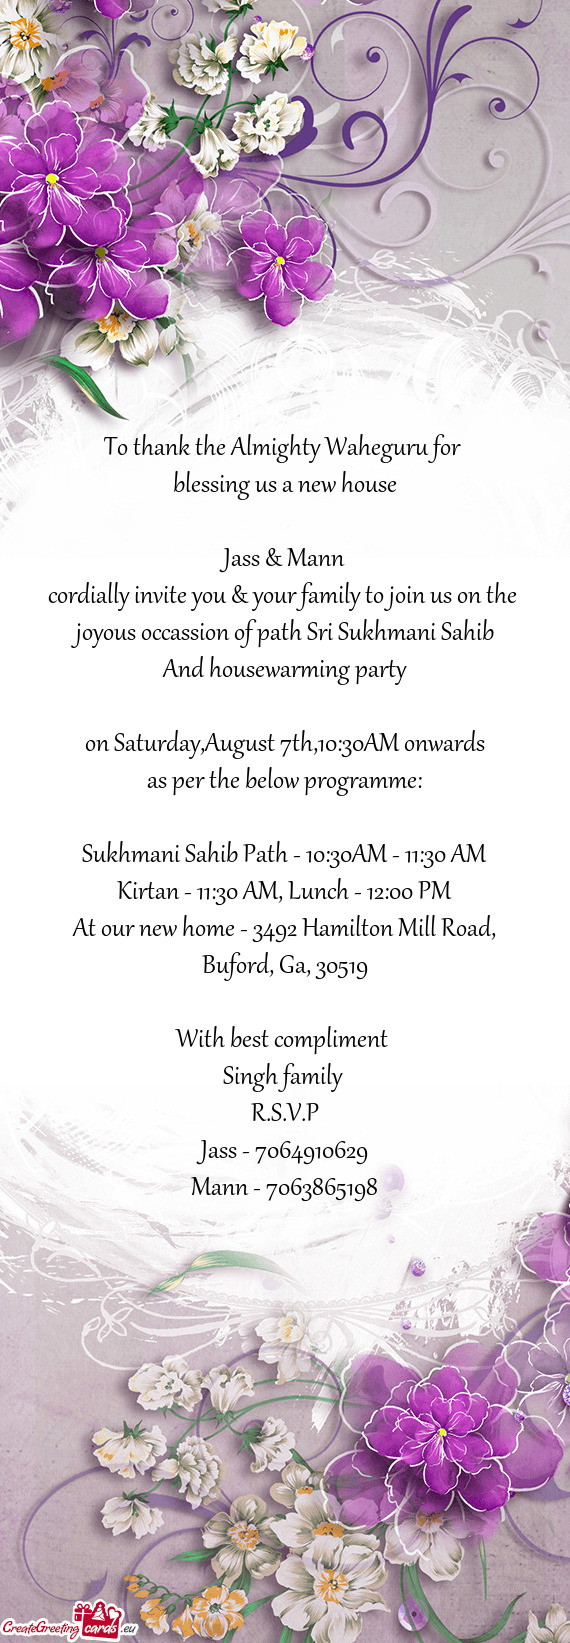 Sukhmani Sahib Path - 10:30AM - 11:30 AM